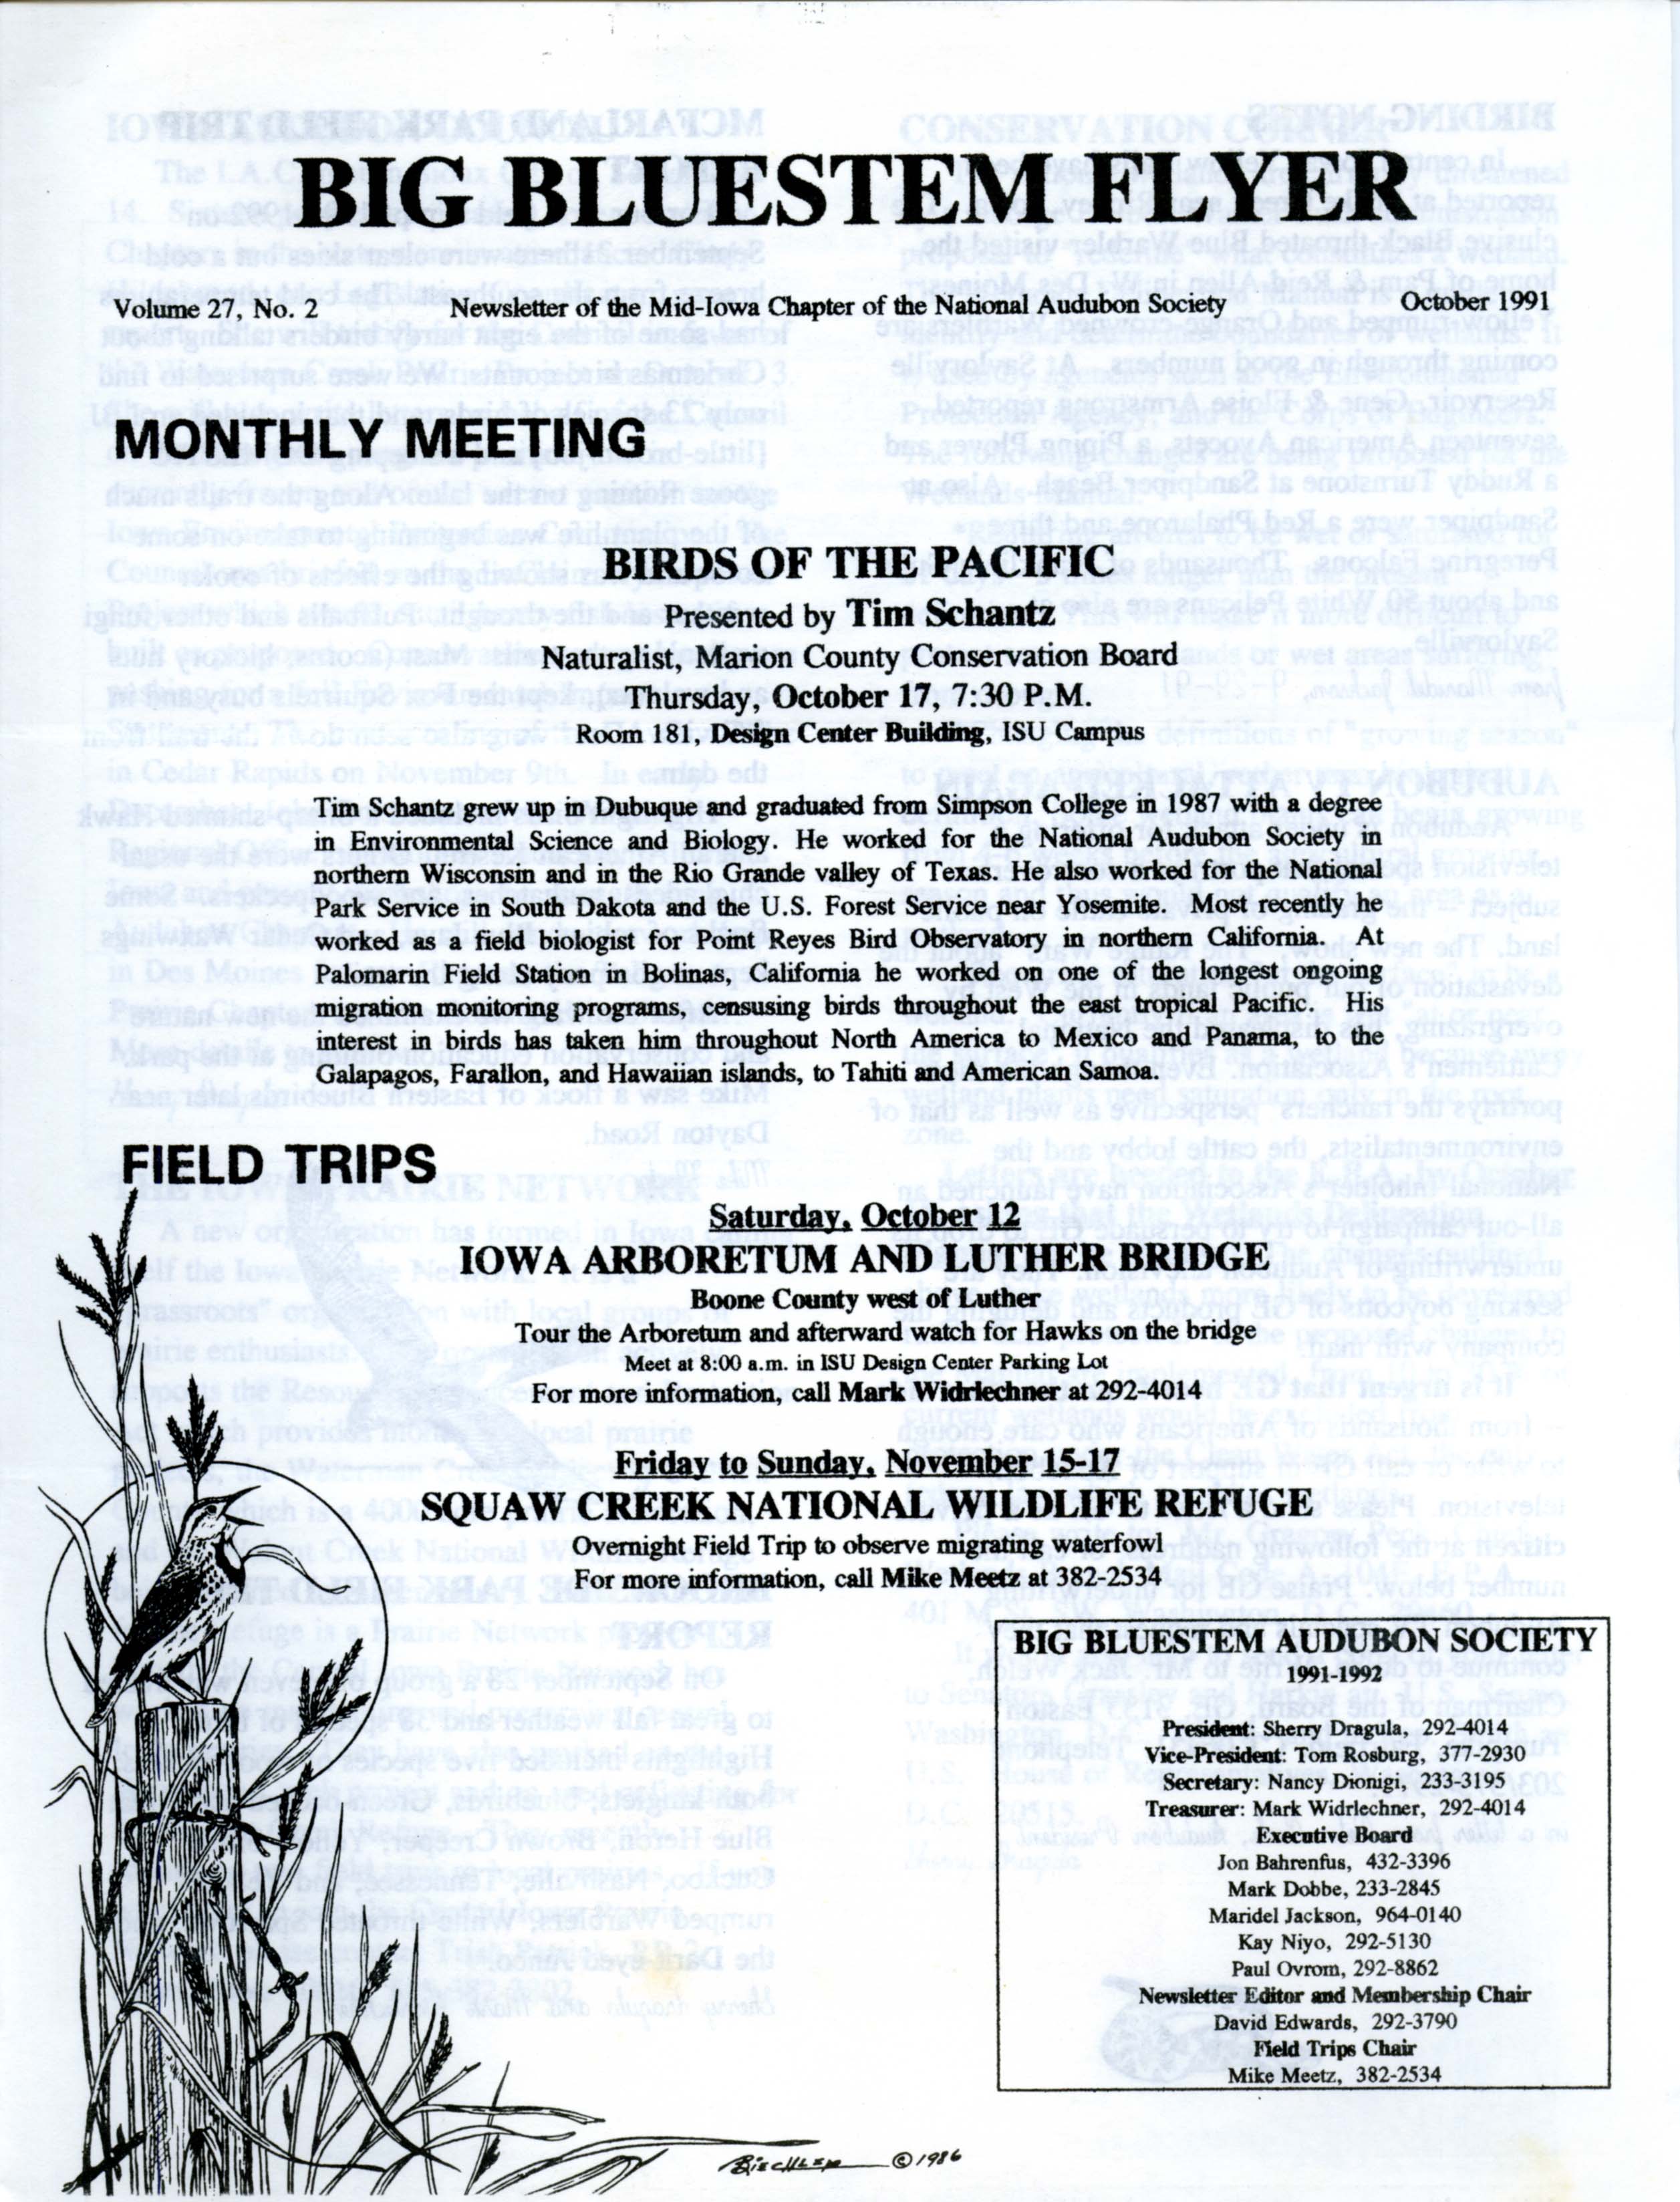 Big Bluestem Flyer, Volume 27, Number 2, October 1991